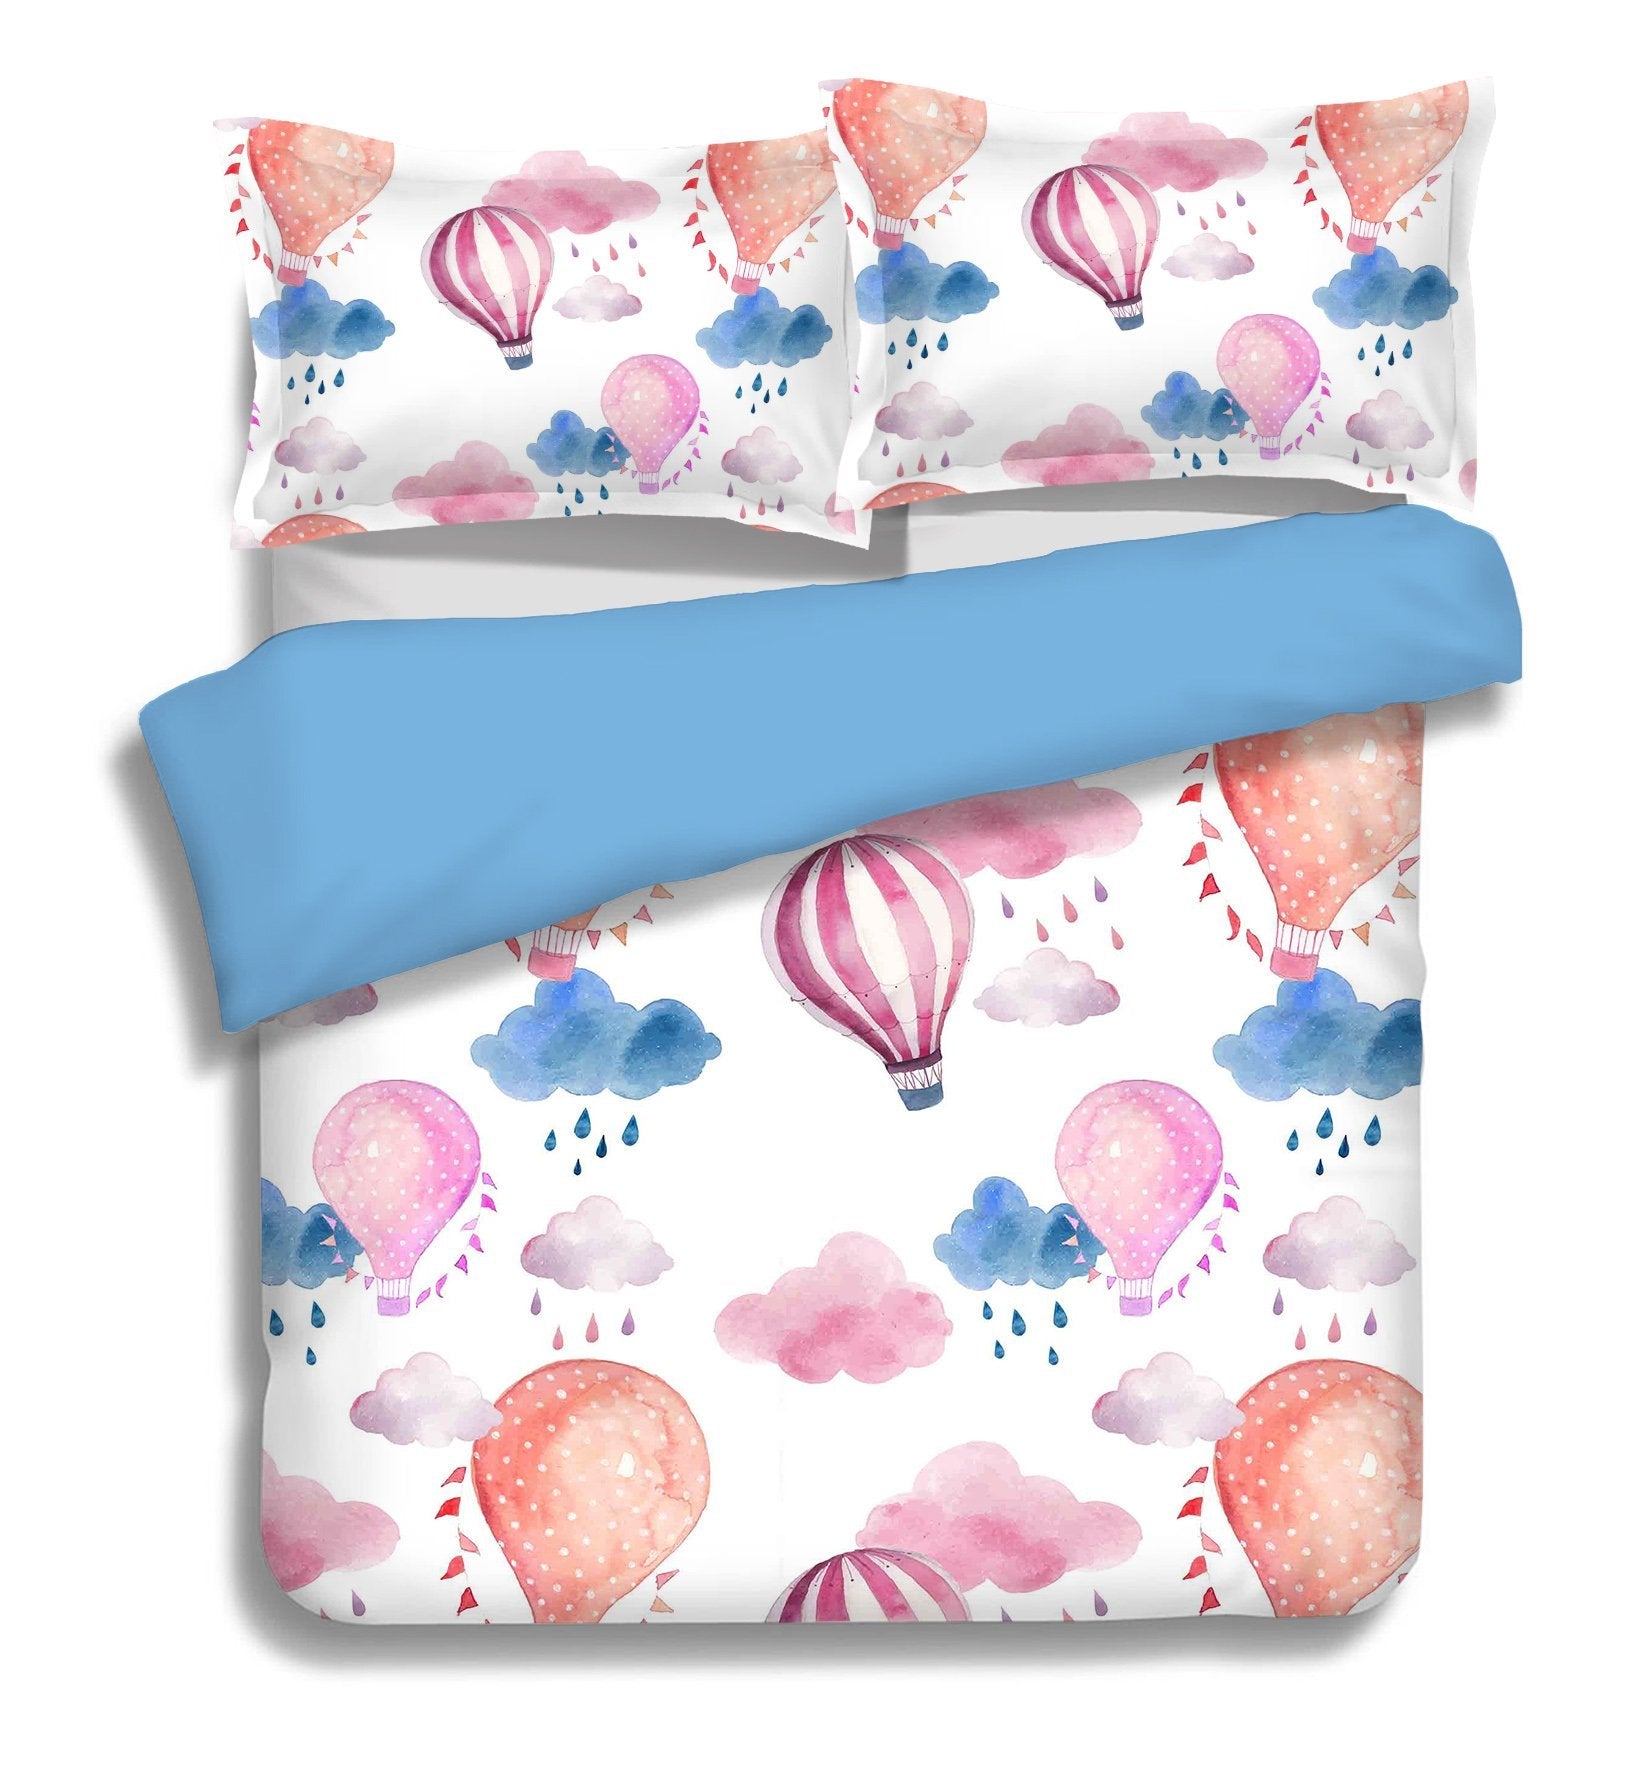 3D Hot Air Balloon 045 Bed Pillowcases Quilt Wallpaper AJ Wallpaper 